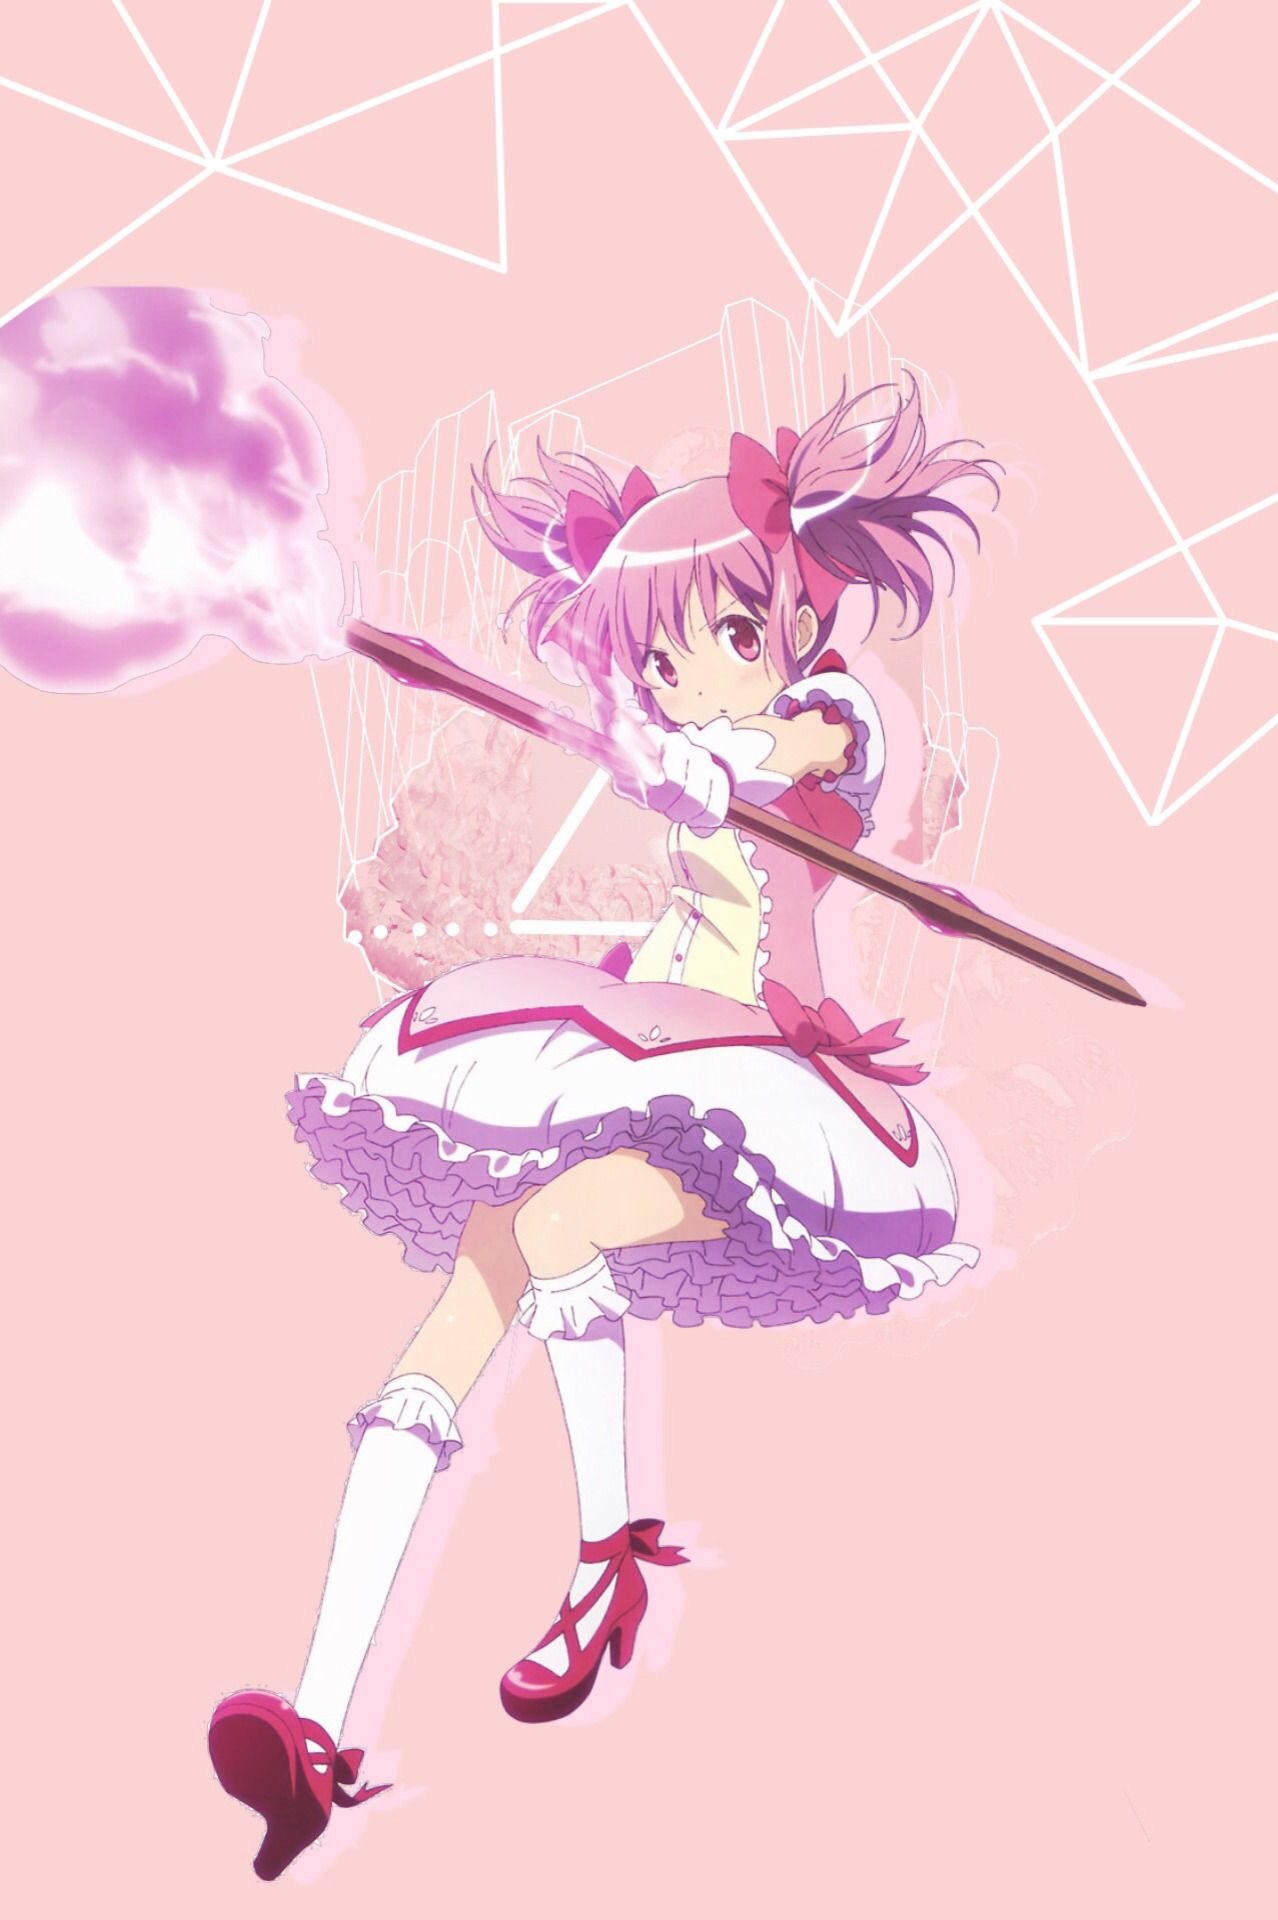 madoka magica wallpaper. Magical girl anime, Anime, Madoka magica